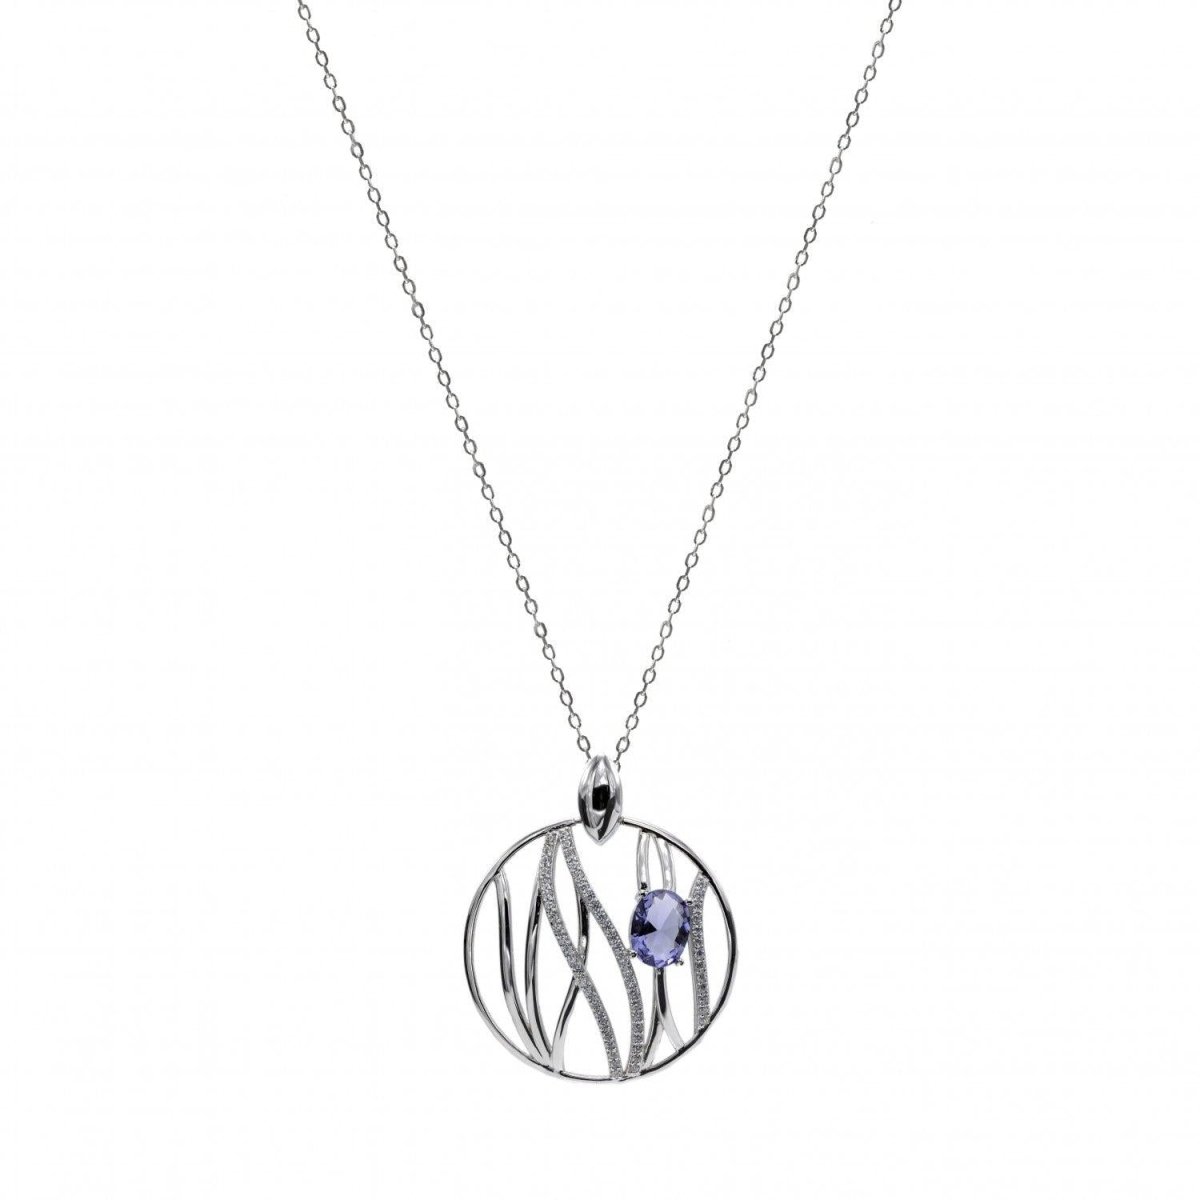 Necklace - Large silver pendants with lavender rails design